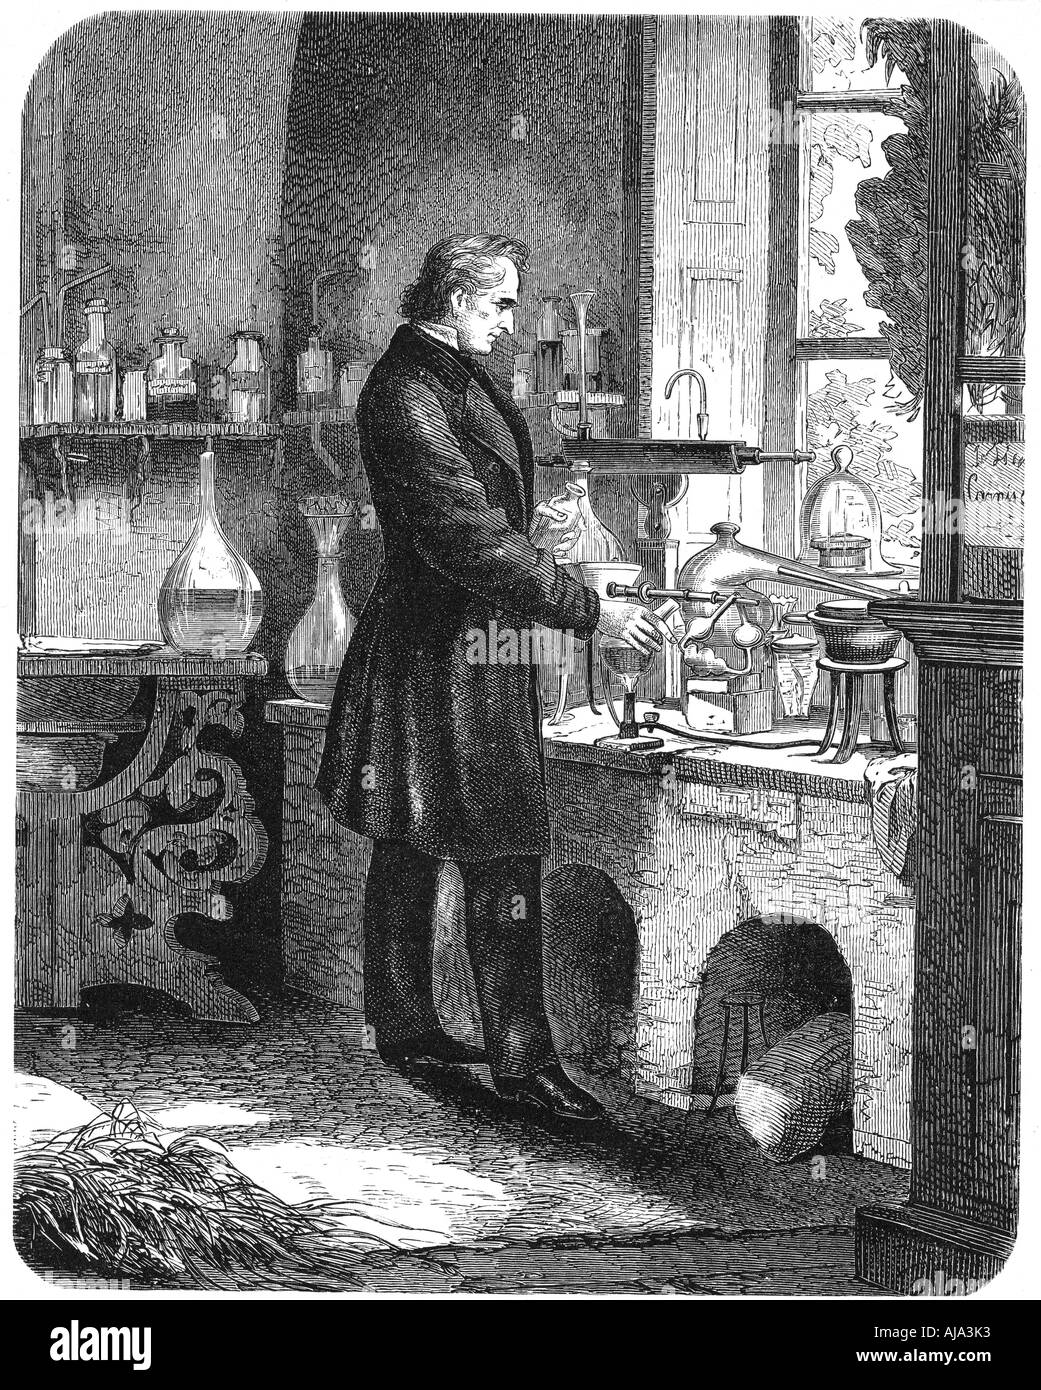 Justus von Liebig, chimiste allemand, au travail dans son laboratoire, milieu du 19ème siècle (c1885). Artiste : Inconnu Banque D'Images